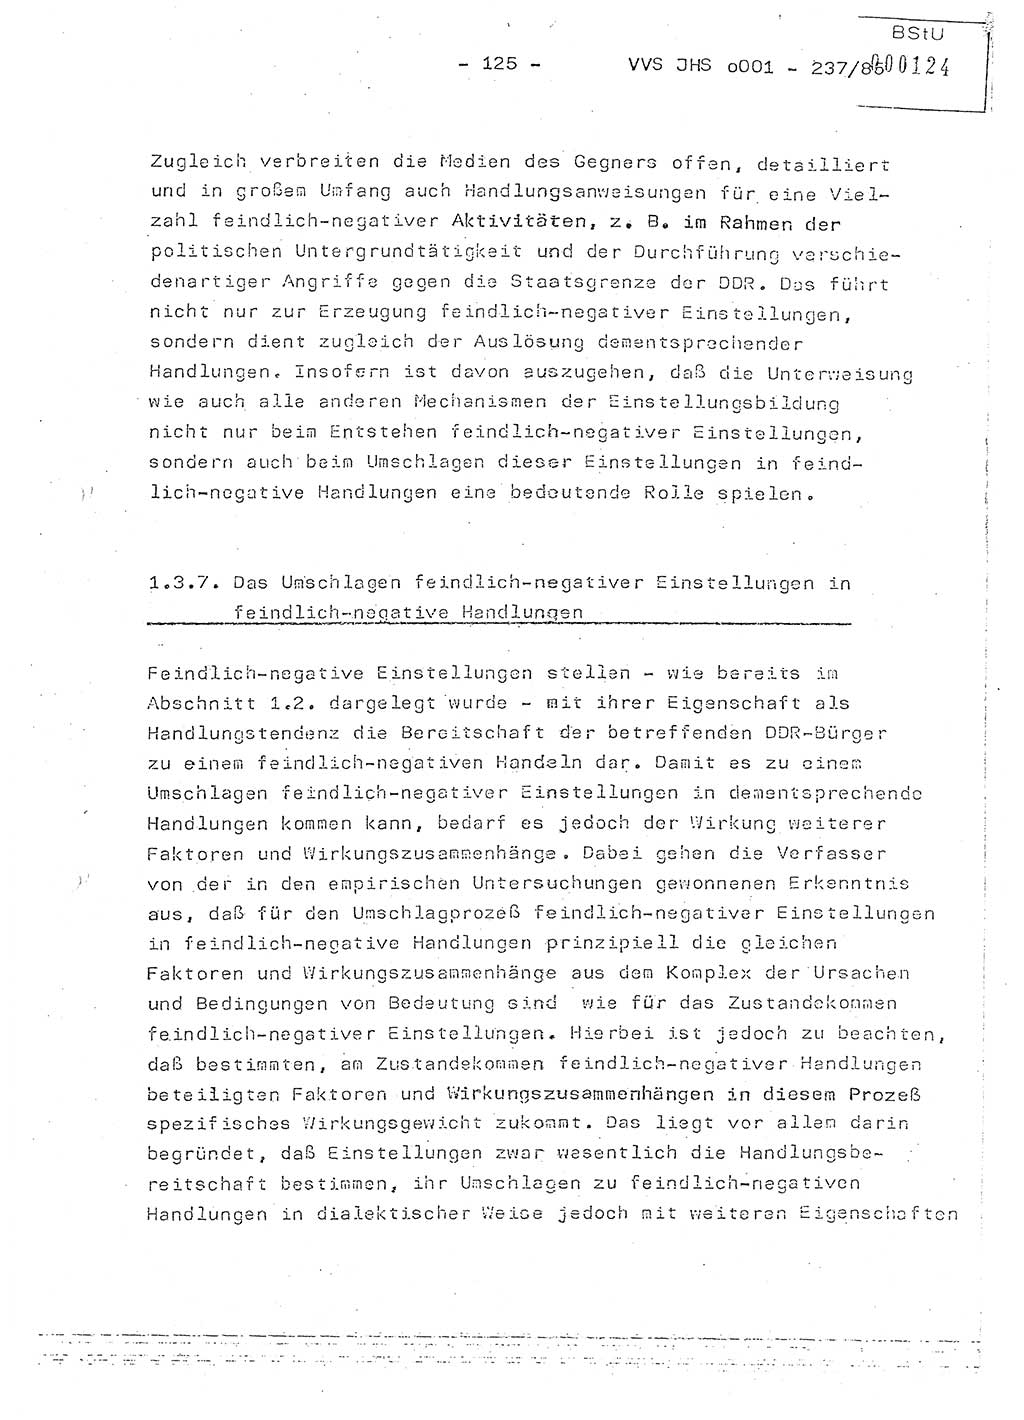 Dissertation Oberstleutnant Peter Jakulski (JHS), Oberstleutnat Christian Rudolph (HA Ⅸ), Major Horst Böttger (ZMD), Major Wolfgang Grüneberg (JHS), Major Albert Meutsch (JHS), Ministerium für Staatssicherheit (MfS) [Deutsche Demokratische Republik (DDR)], Juristische Hochschule (JHS), Vertrauliche Verschlußsache (VVS) o001-237/85, Potsdam 1985, Seite 125 (Diss. MfS DDR JHS VVS o001-237/85 1985, S. 125)